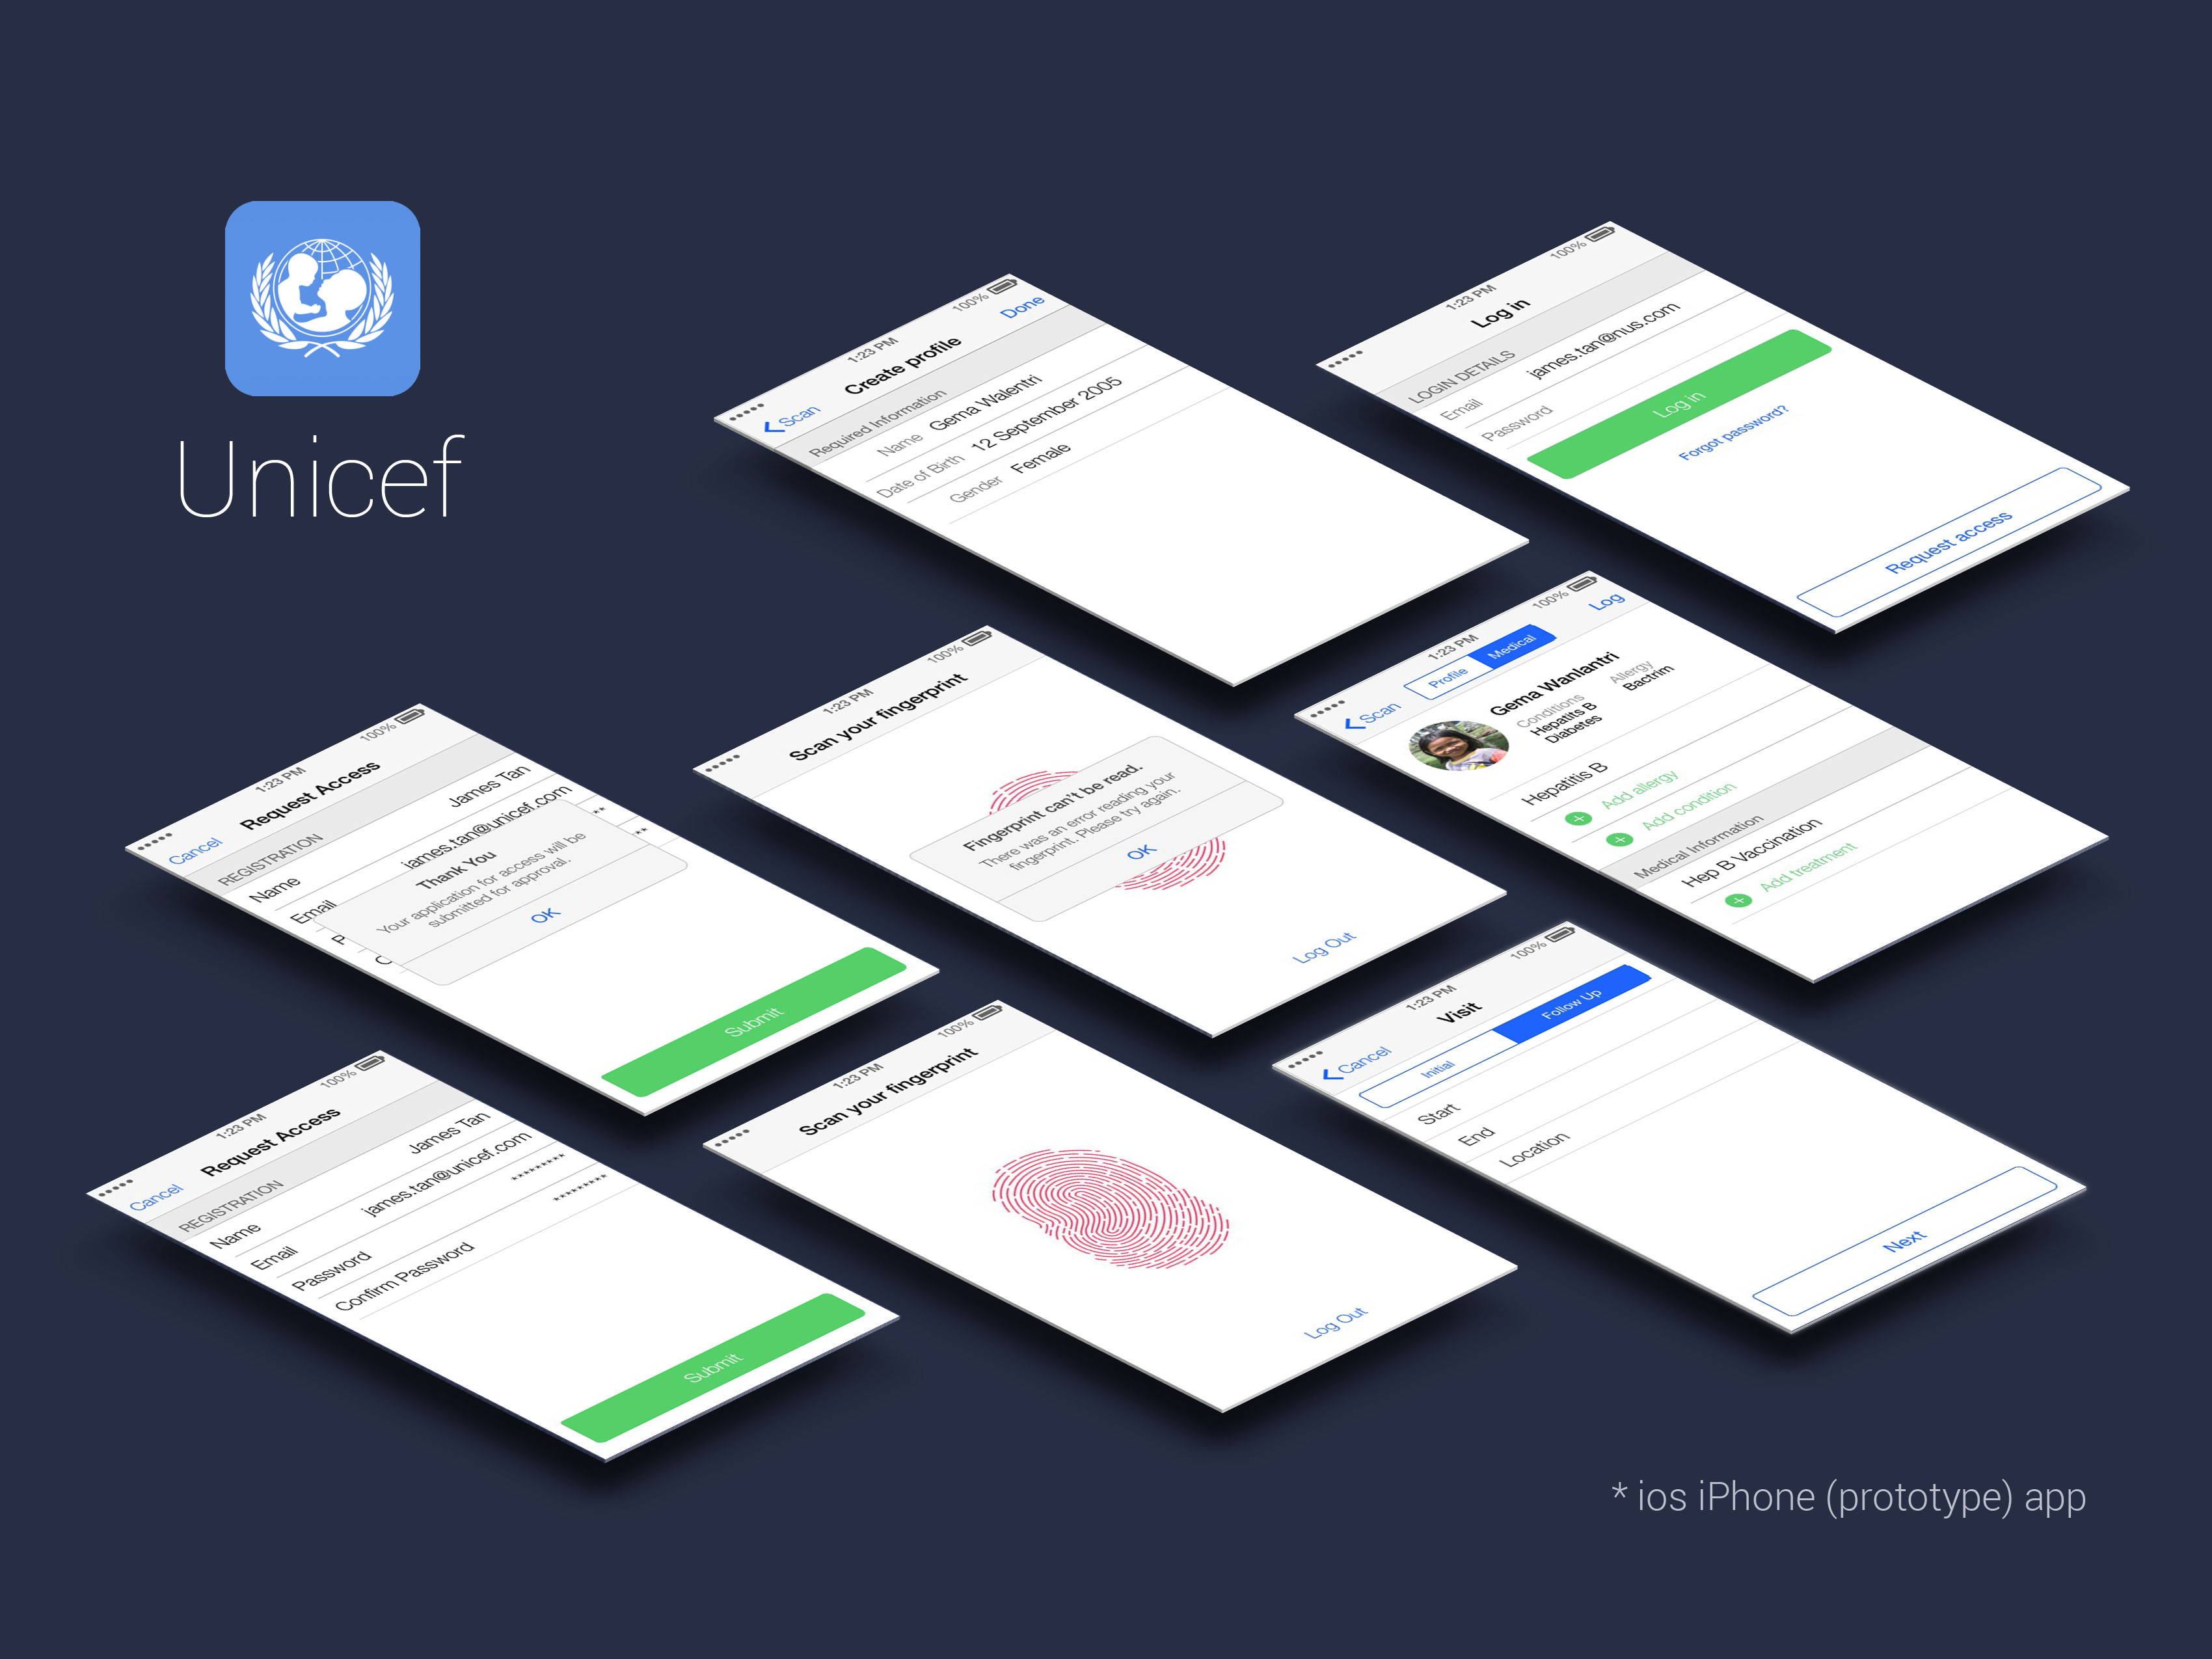 Unicef mobile app prototype